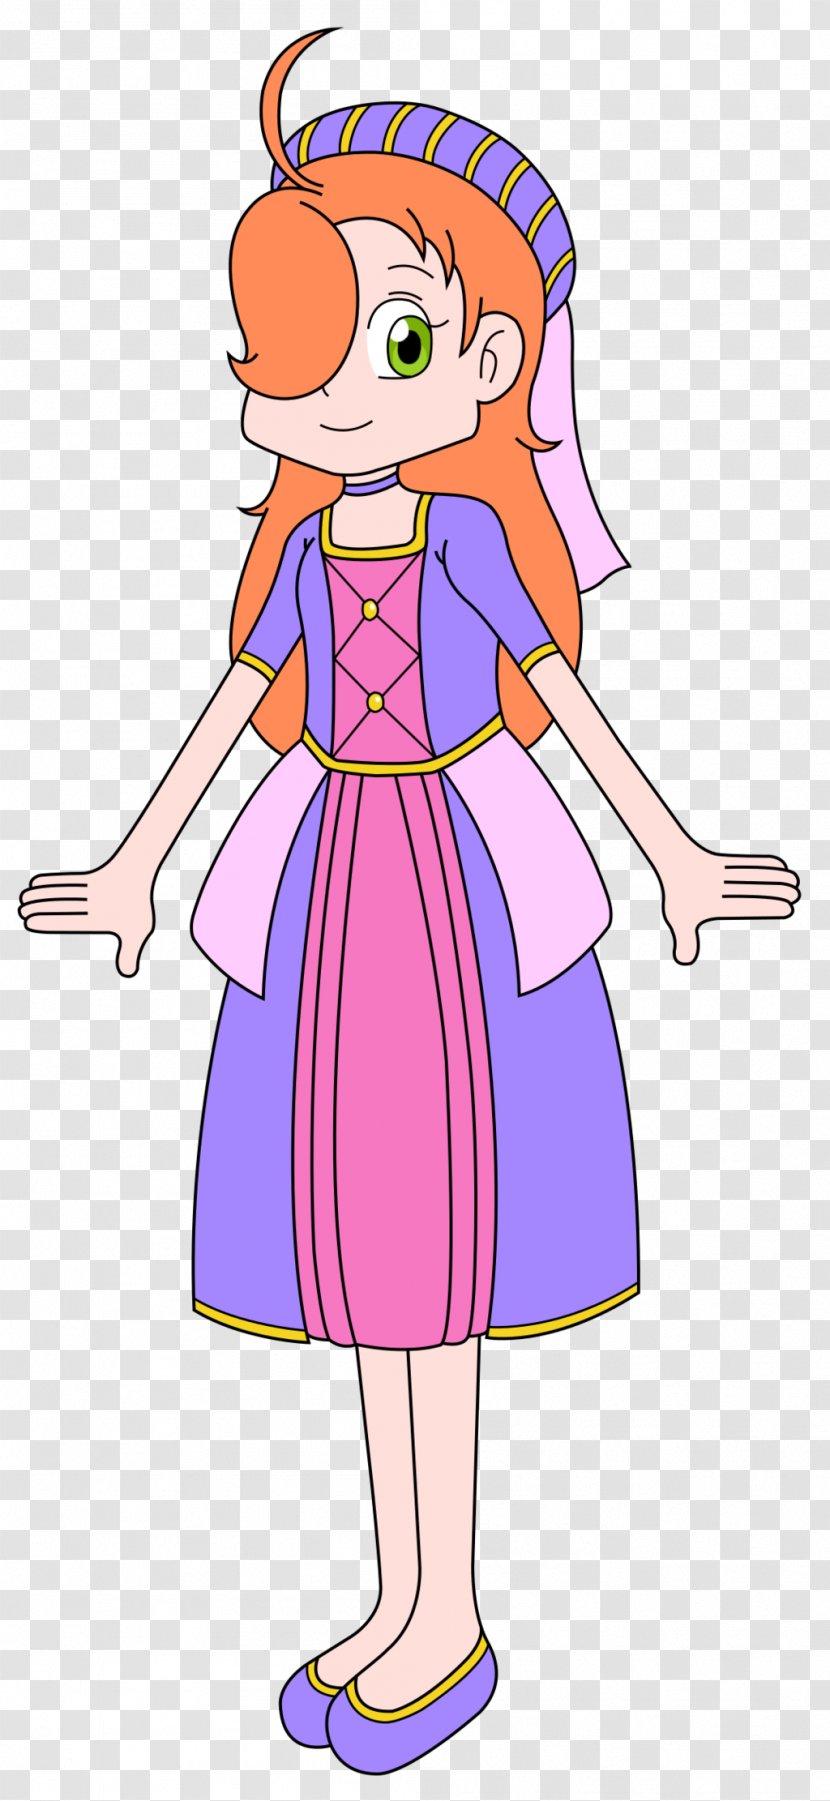 Pokémon Trainer Character Clip Art - Silhouette - Princess Dress Transparent PNG